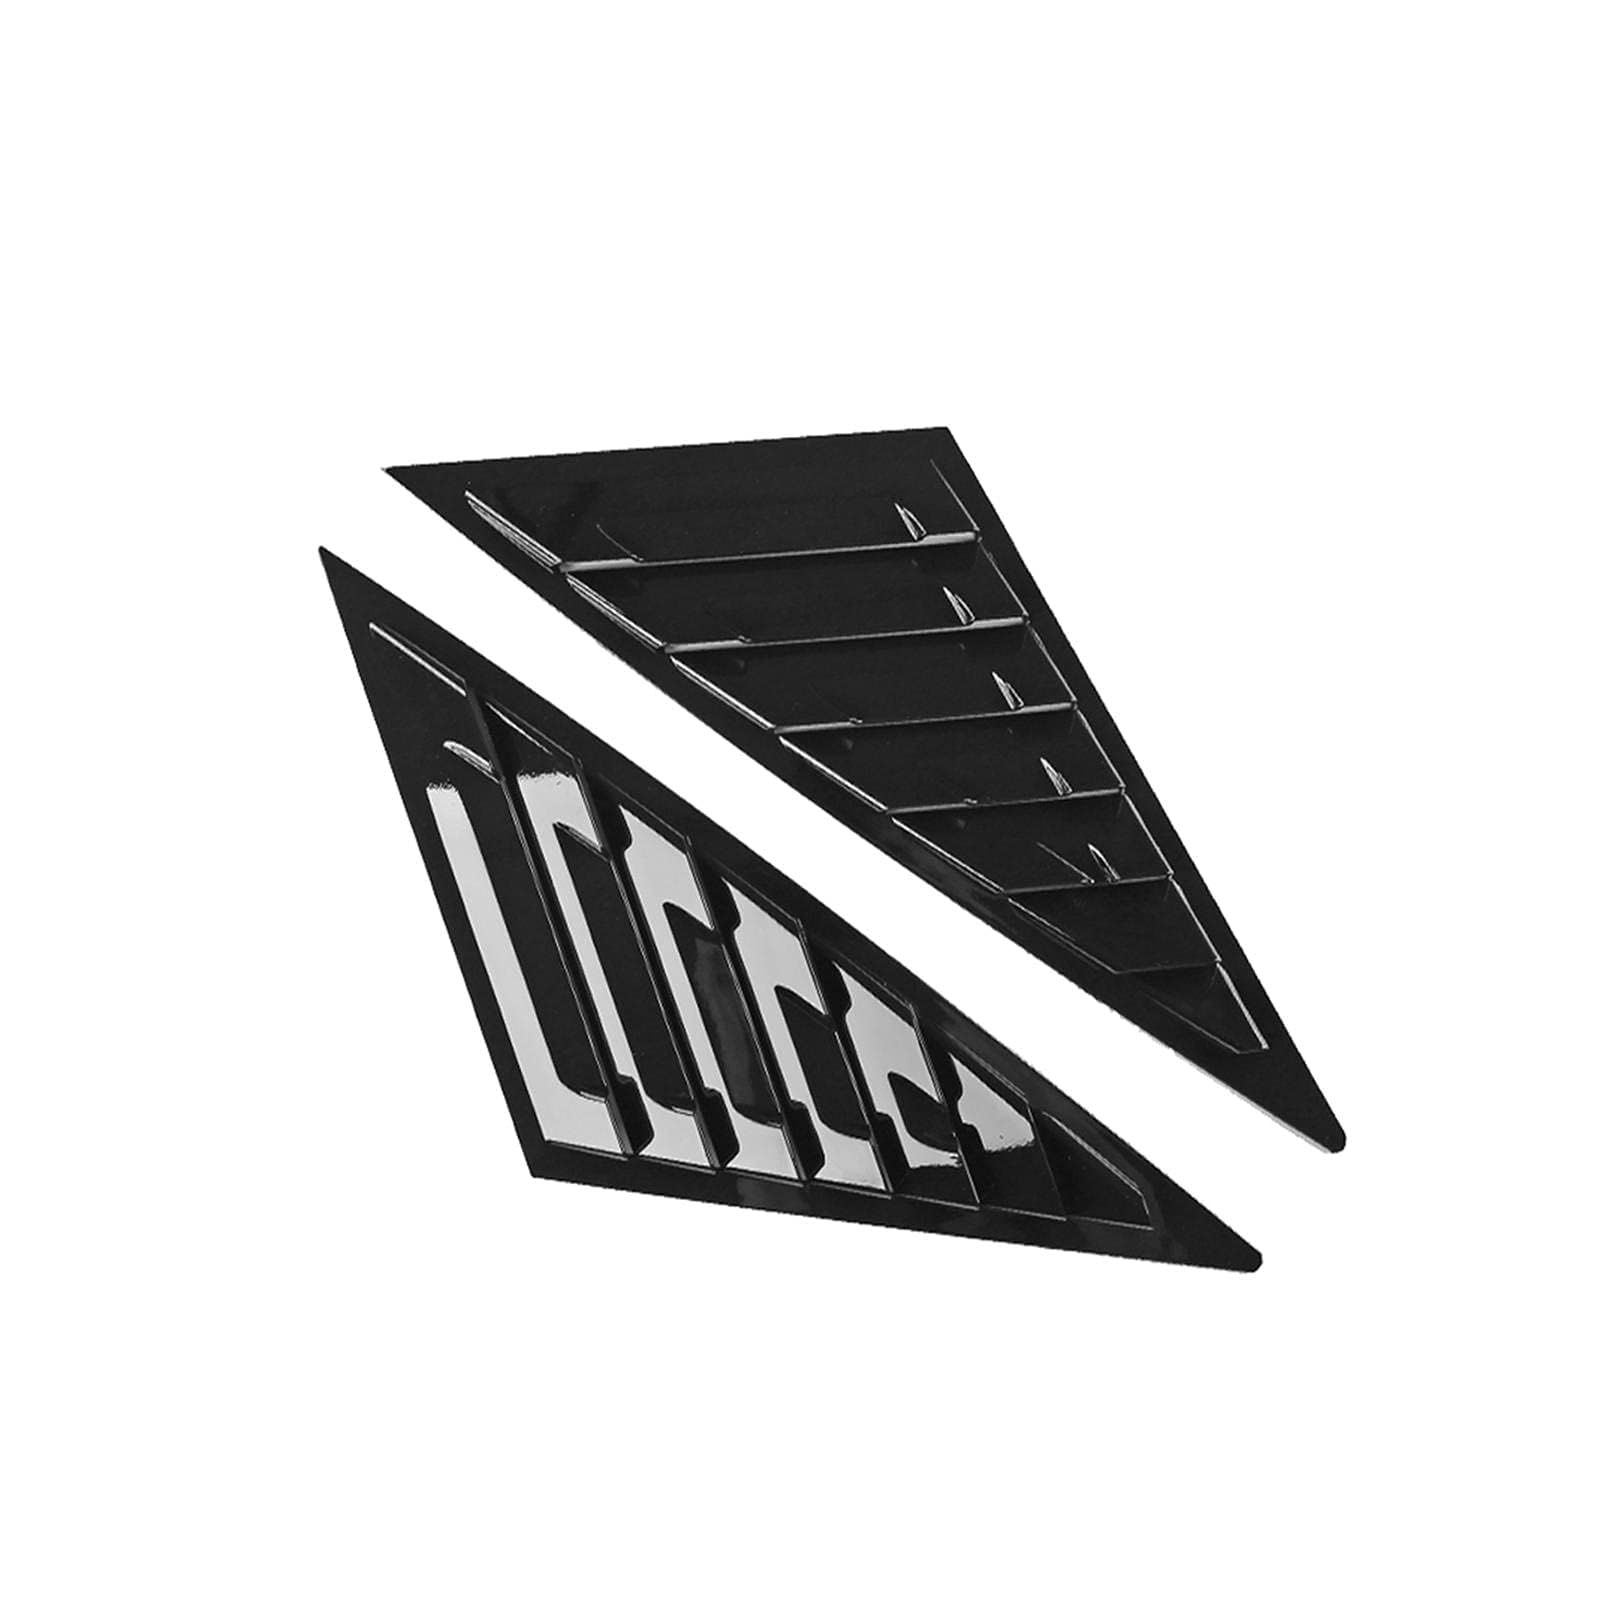 2× Seitenfenster Lamellen Abdeckung für to-yota Avalon XX50 2019 2020 2021 - ABS Dreieck Splitter Schattenabdeckung - Hinteres Lüftungsschlitze Spoiler Exterior Dekoration,B-Glossy Black von AMGASMG